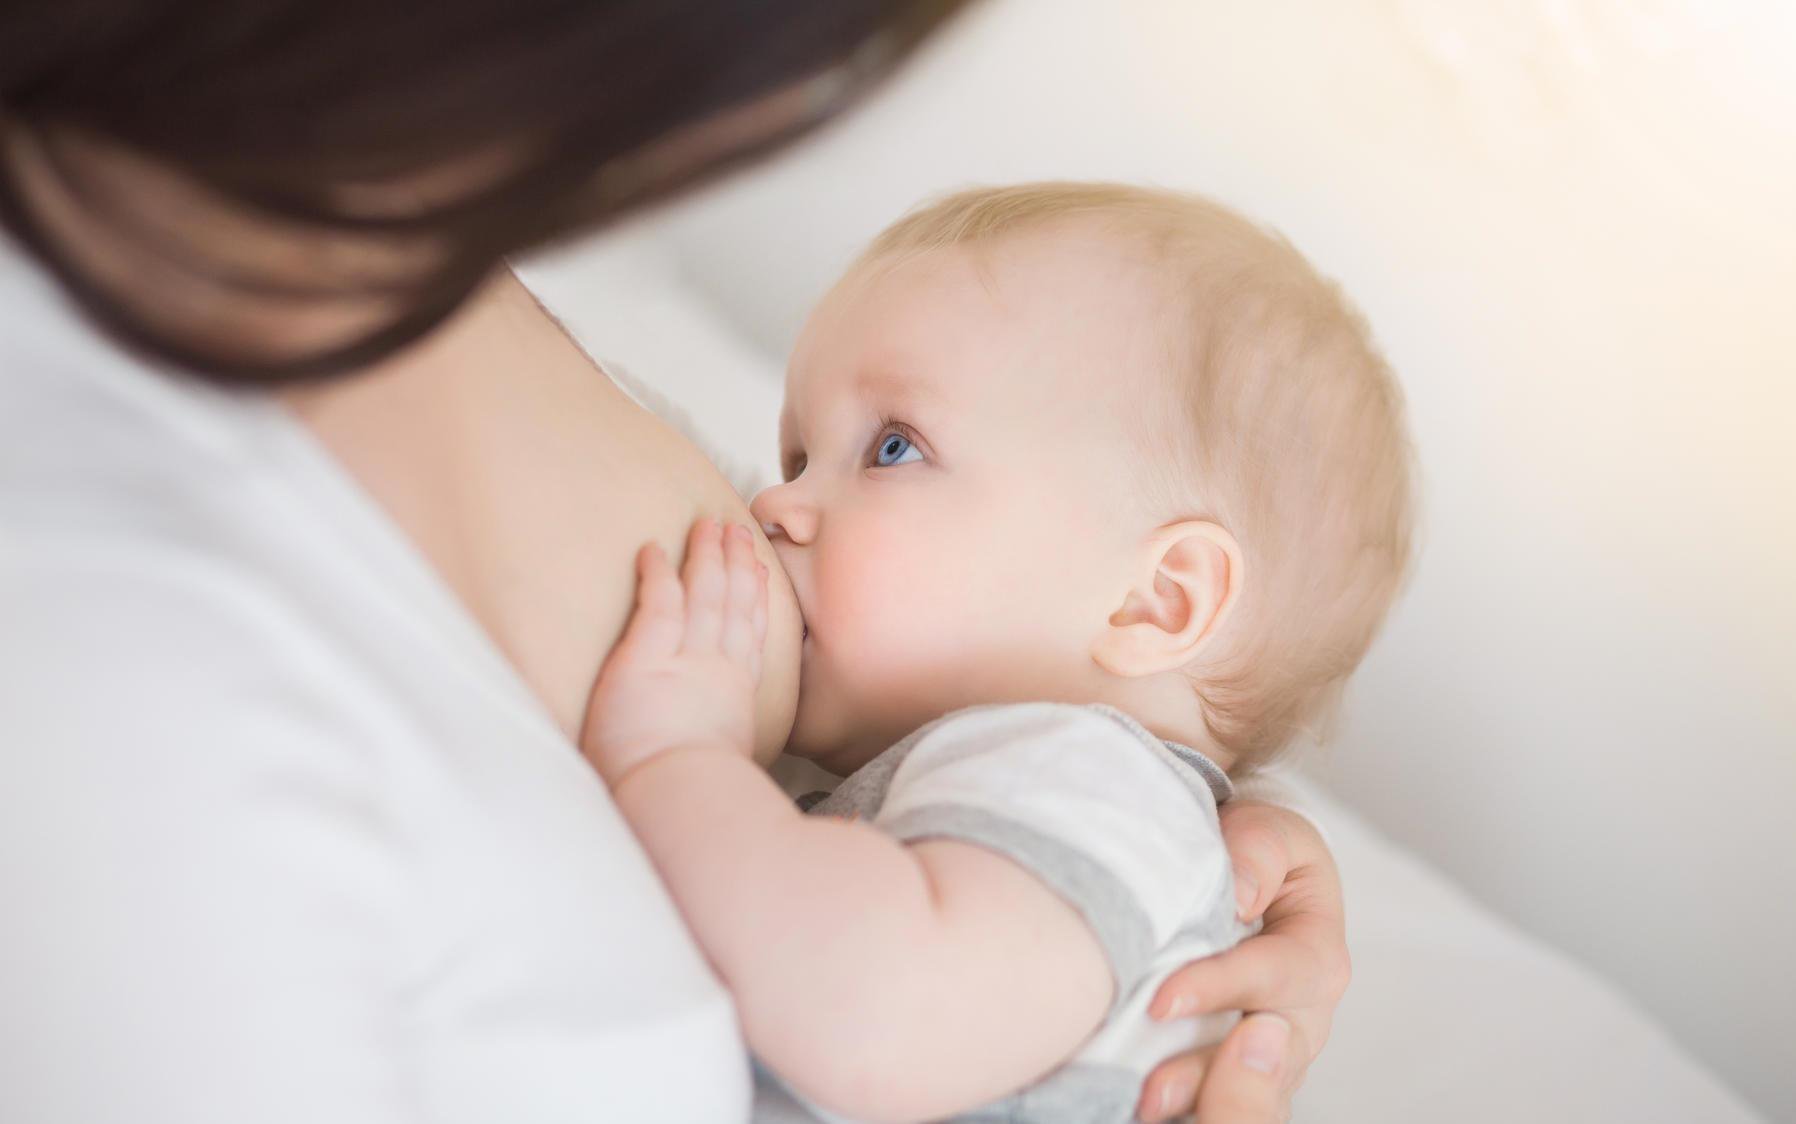 Hướng dẫn cách nuôi dưỡng trẻ đang bú mẹ (0 – 2 năm tuổi)